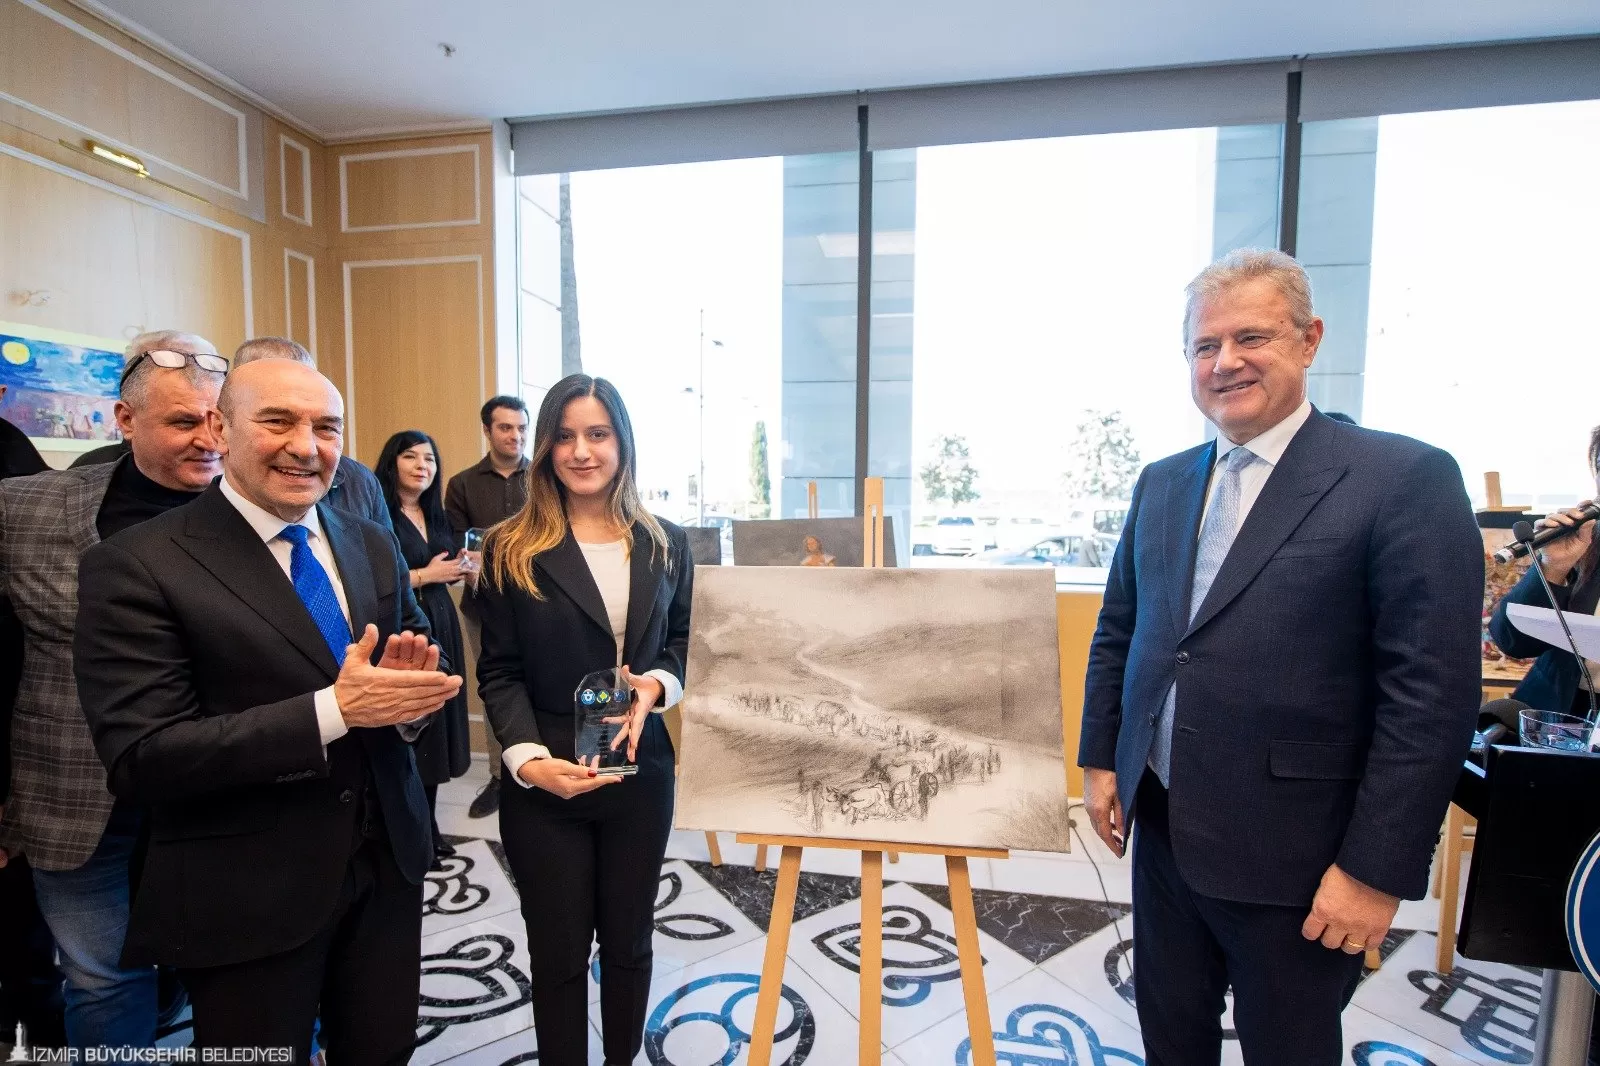 Tunç Soyer, İzmir Ticaret Odası'nın desteği ile Kosova Rumeli Kültür Sanat ve Turizm Derneği tarafından düzenlenen "Rumeli'den Göç" temalı resim sergisinin açılışına katıldı.